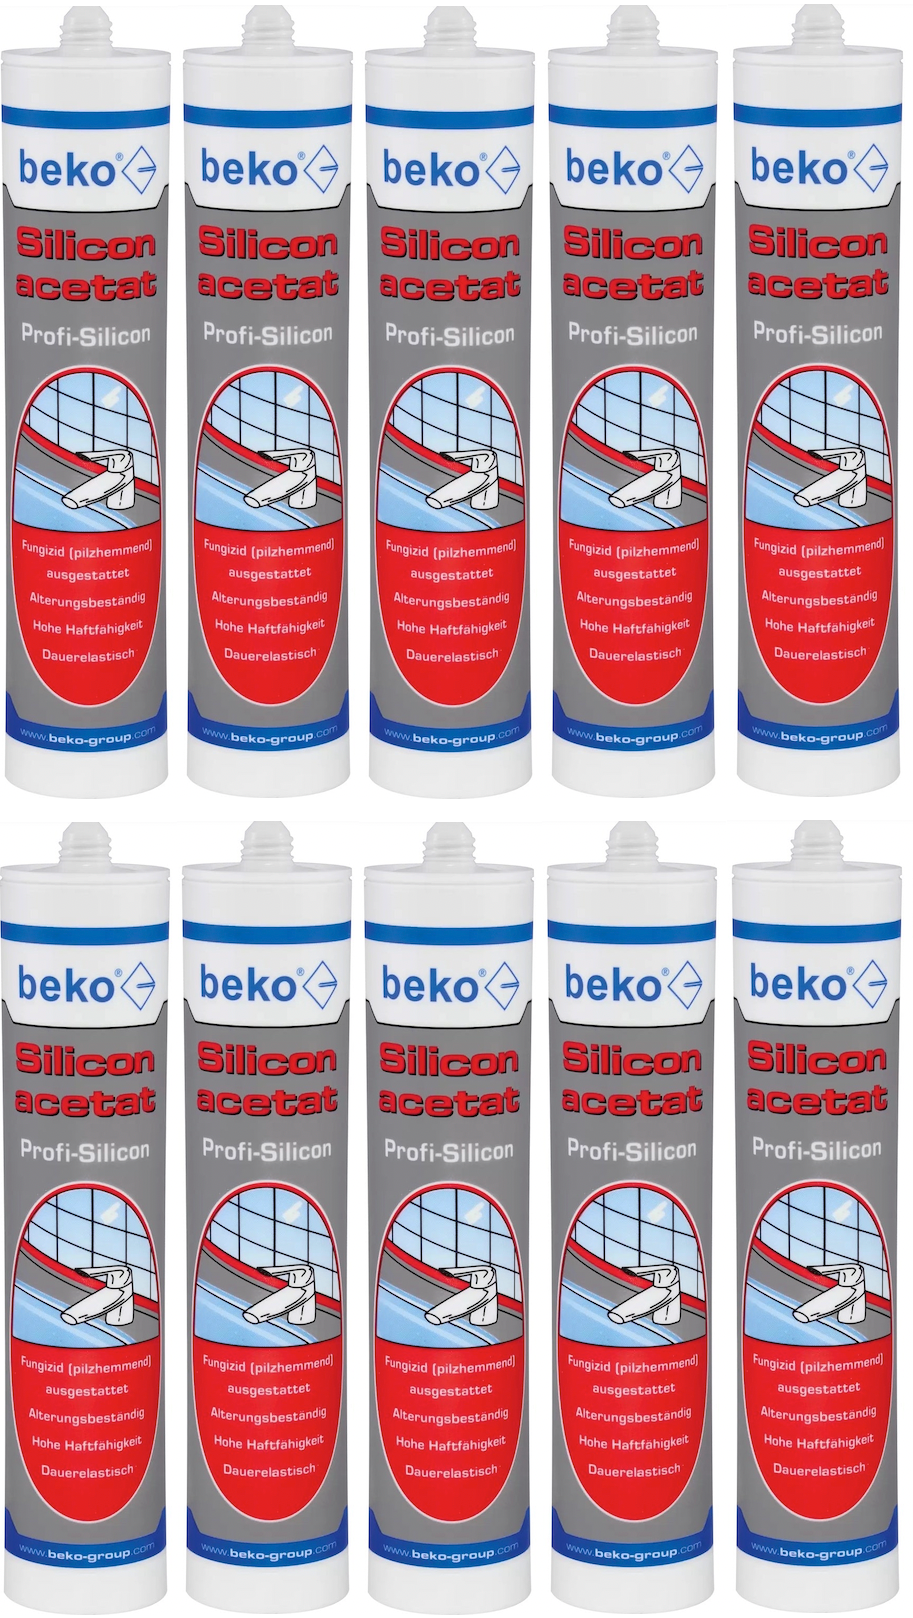 B2B Angebot beko® Silicon acetat